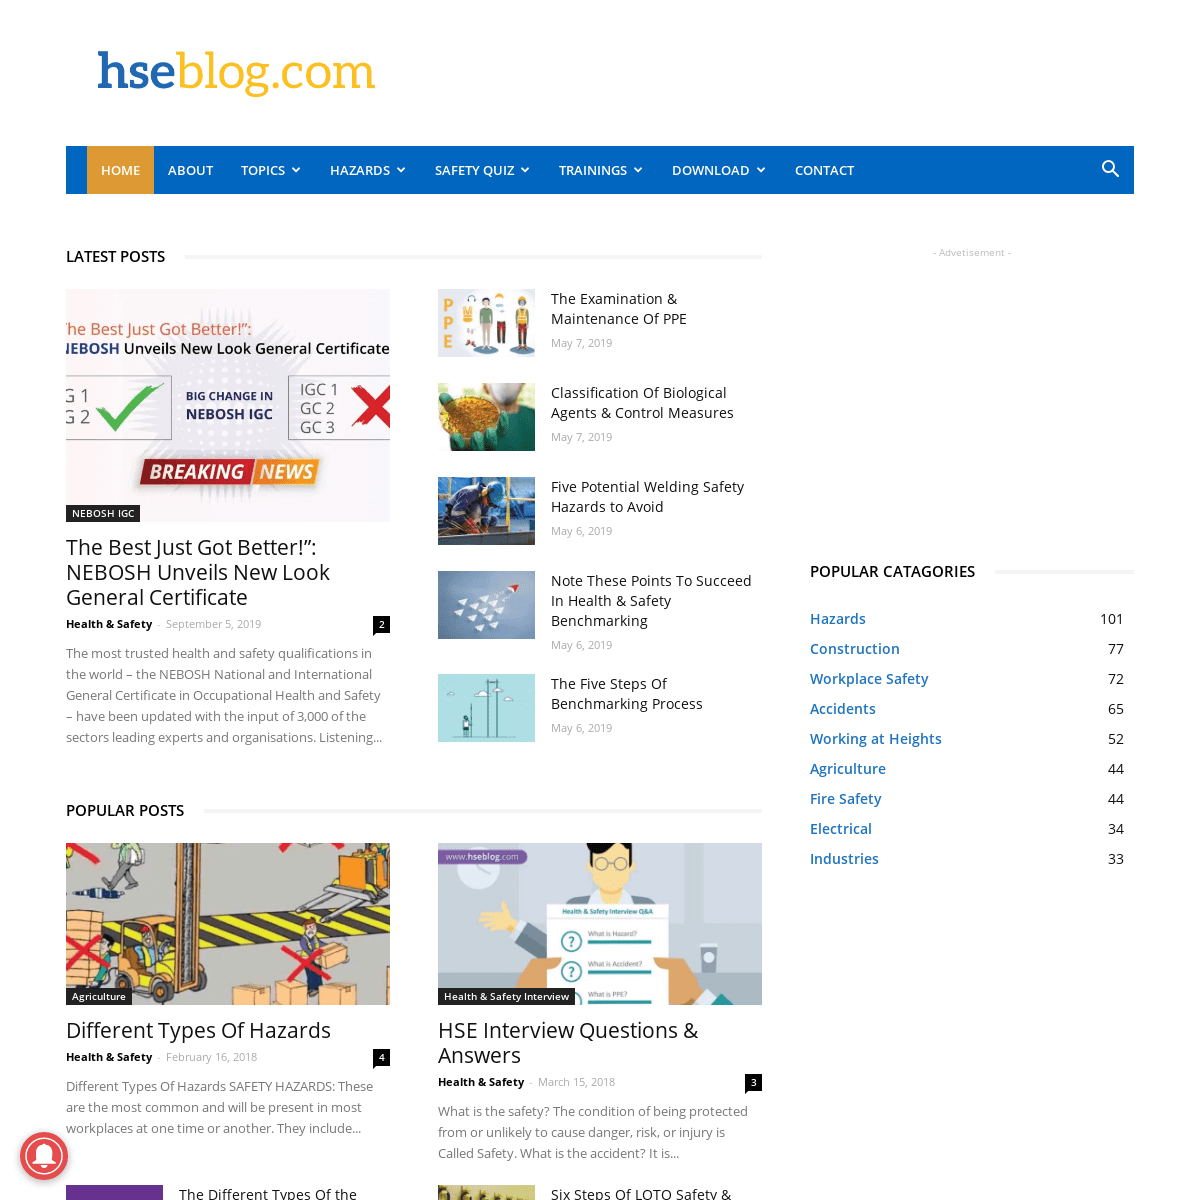 A complete backup of hseblog.com